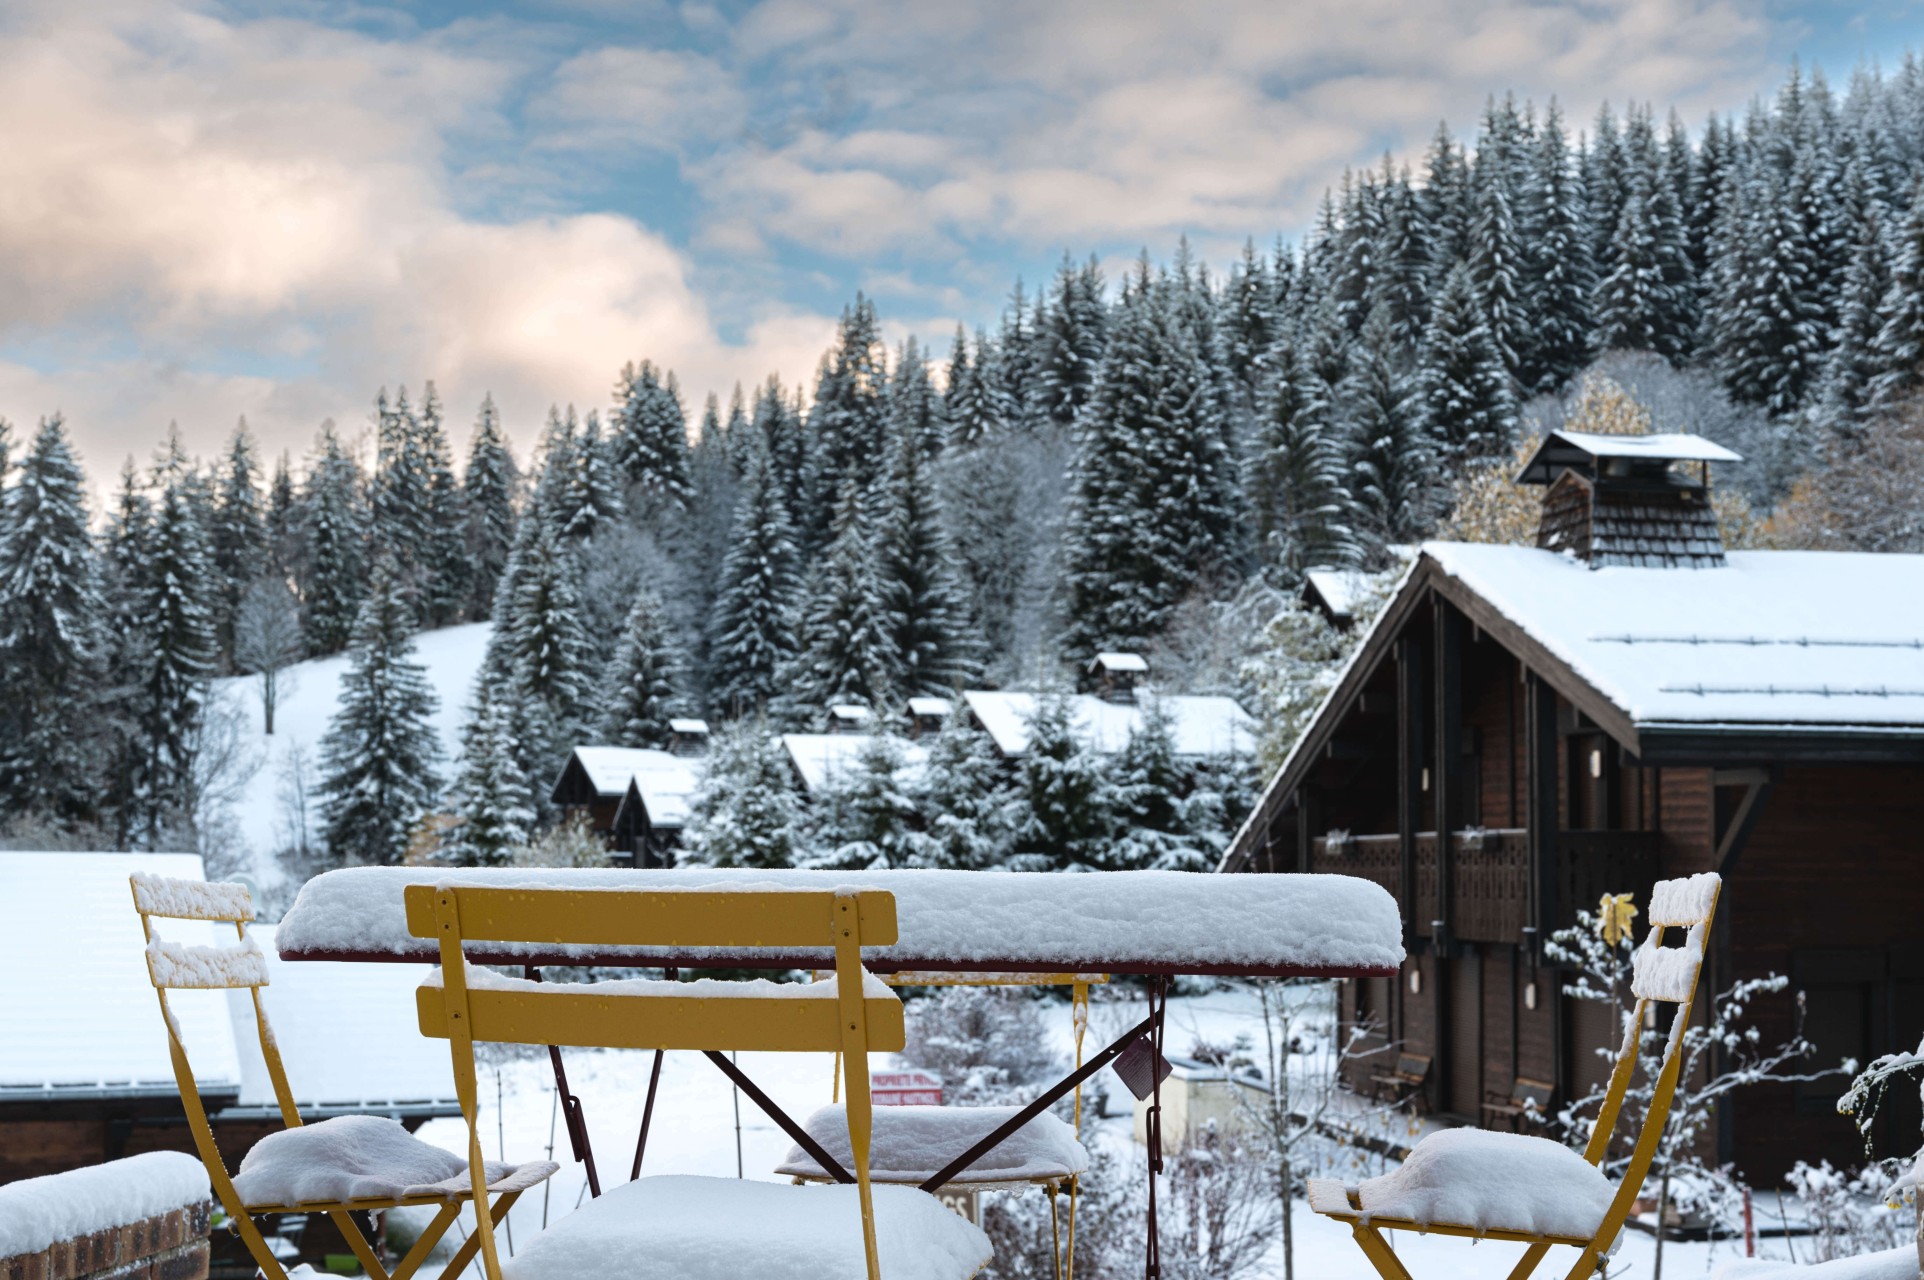 Les Gets - Premières neiges et magnifiques paysages ensoleillés ce matin aux Chavannes